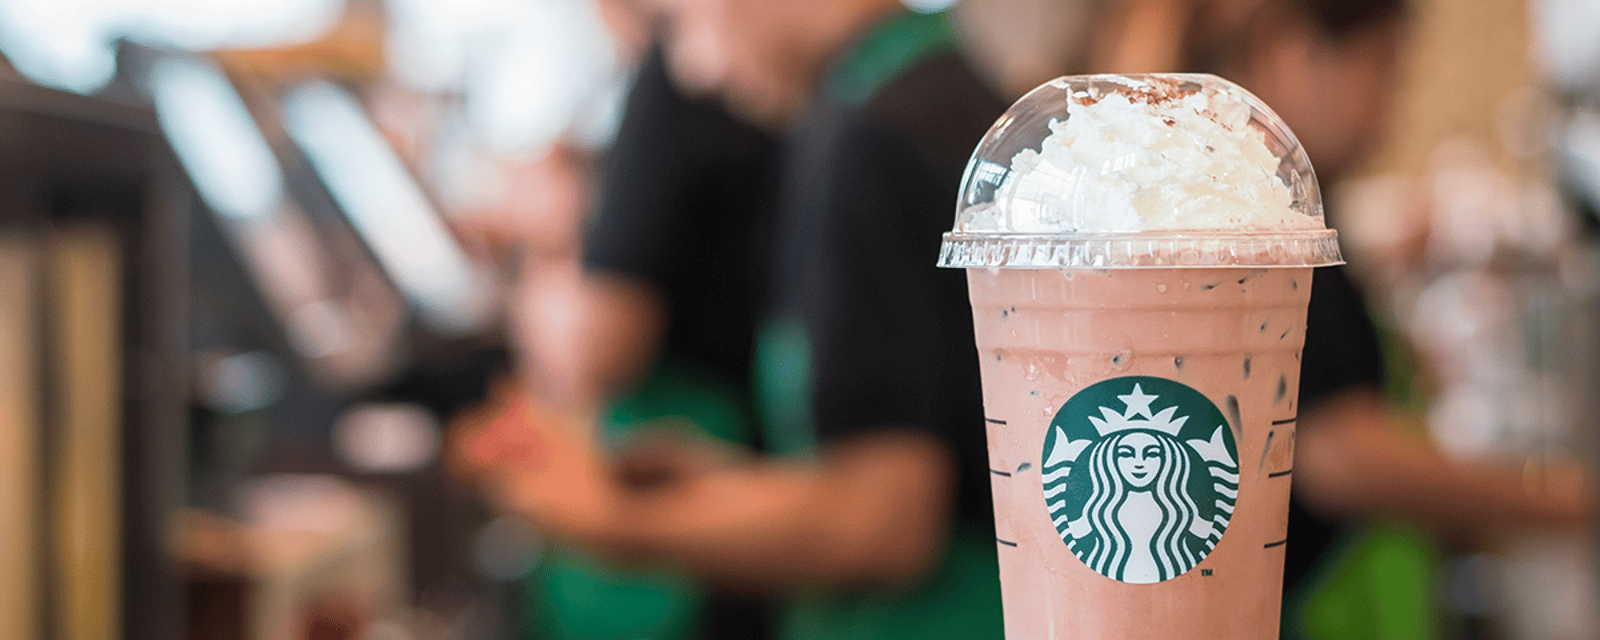 Mauvaise nouvelle pour les clients de Starbucks